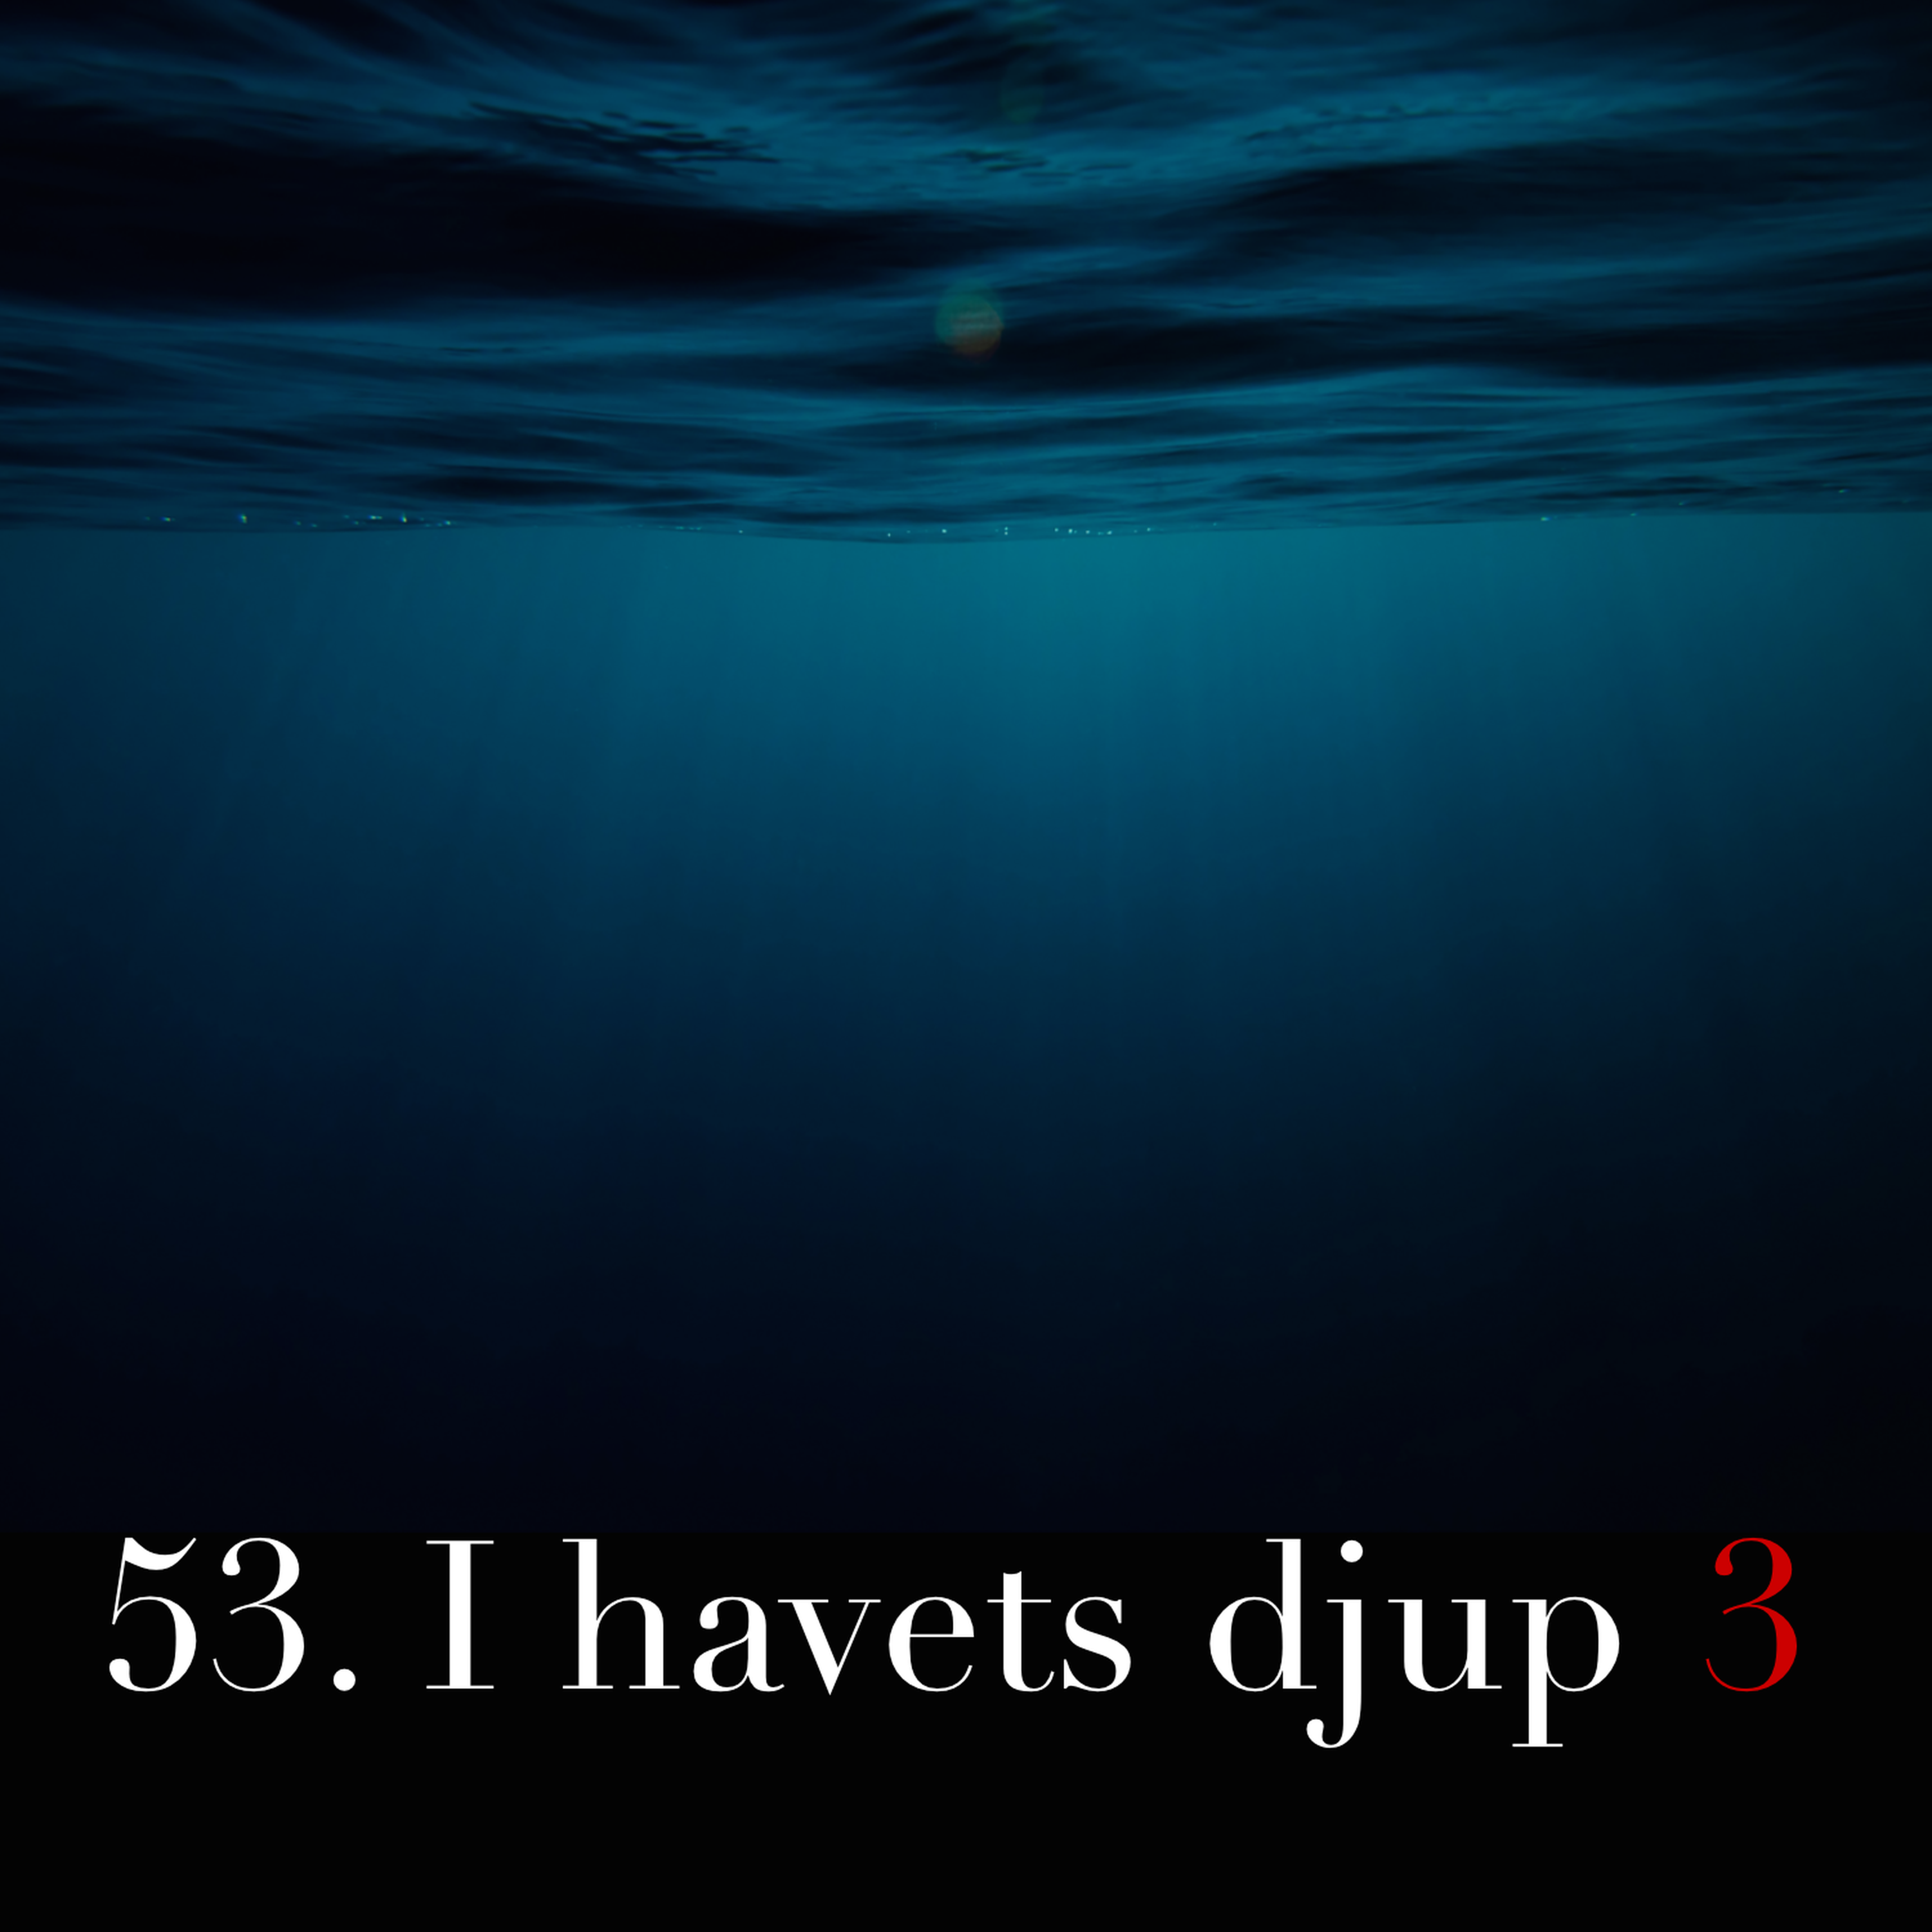 53. I havets djup 3